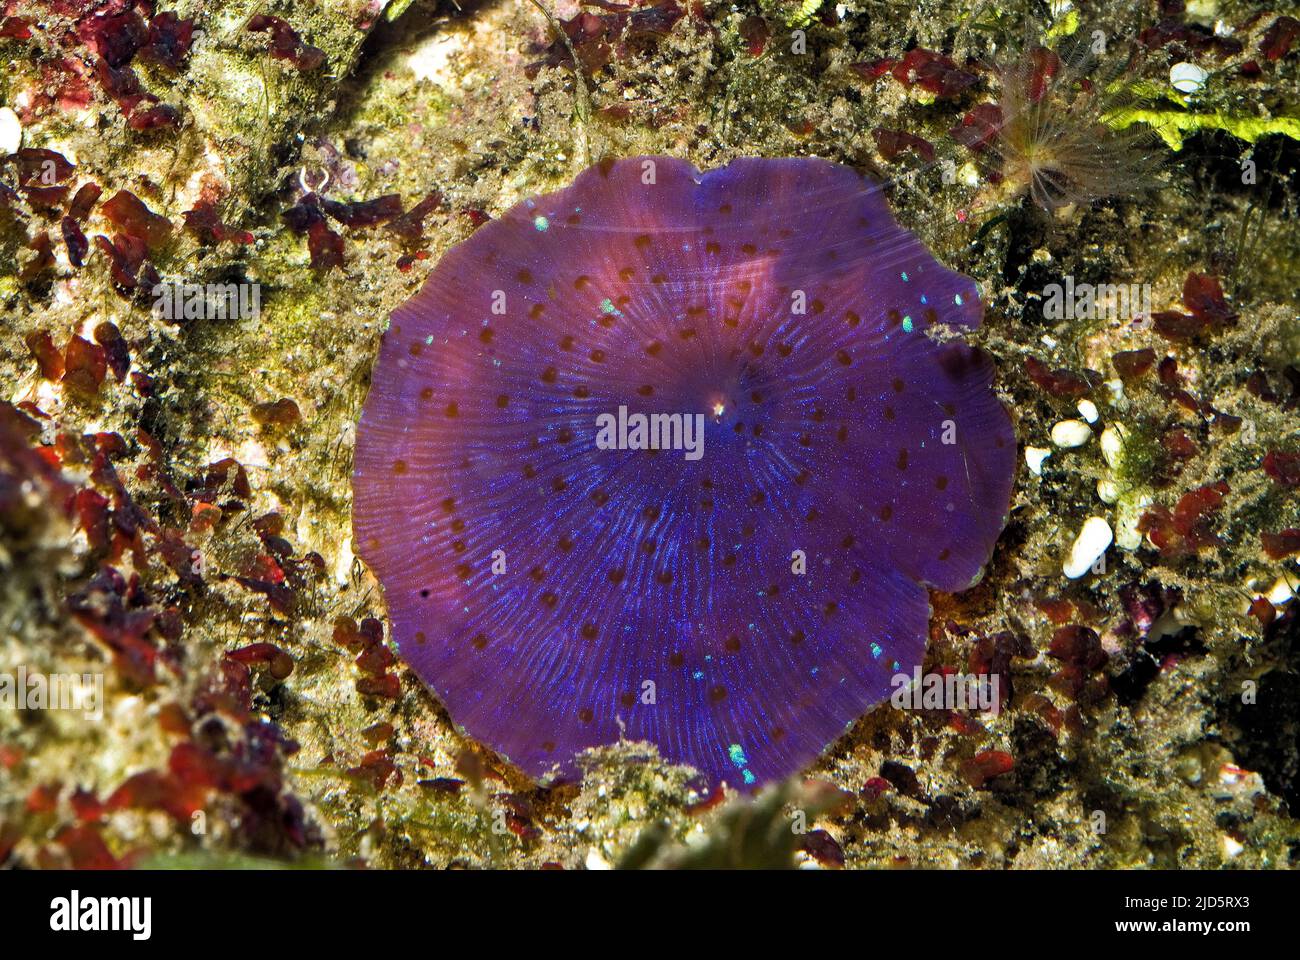 Acoel, platworm commensali del genere Waminaa che vive su un anemone del disco (Discosoma sp.). Foto Stock